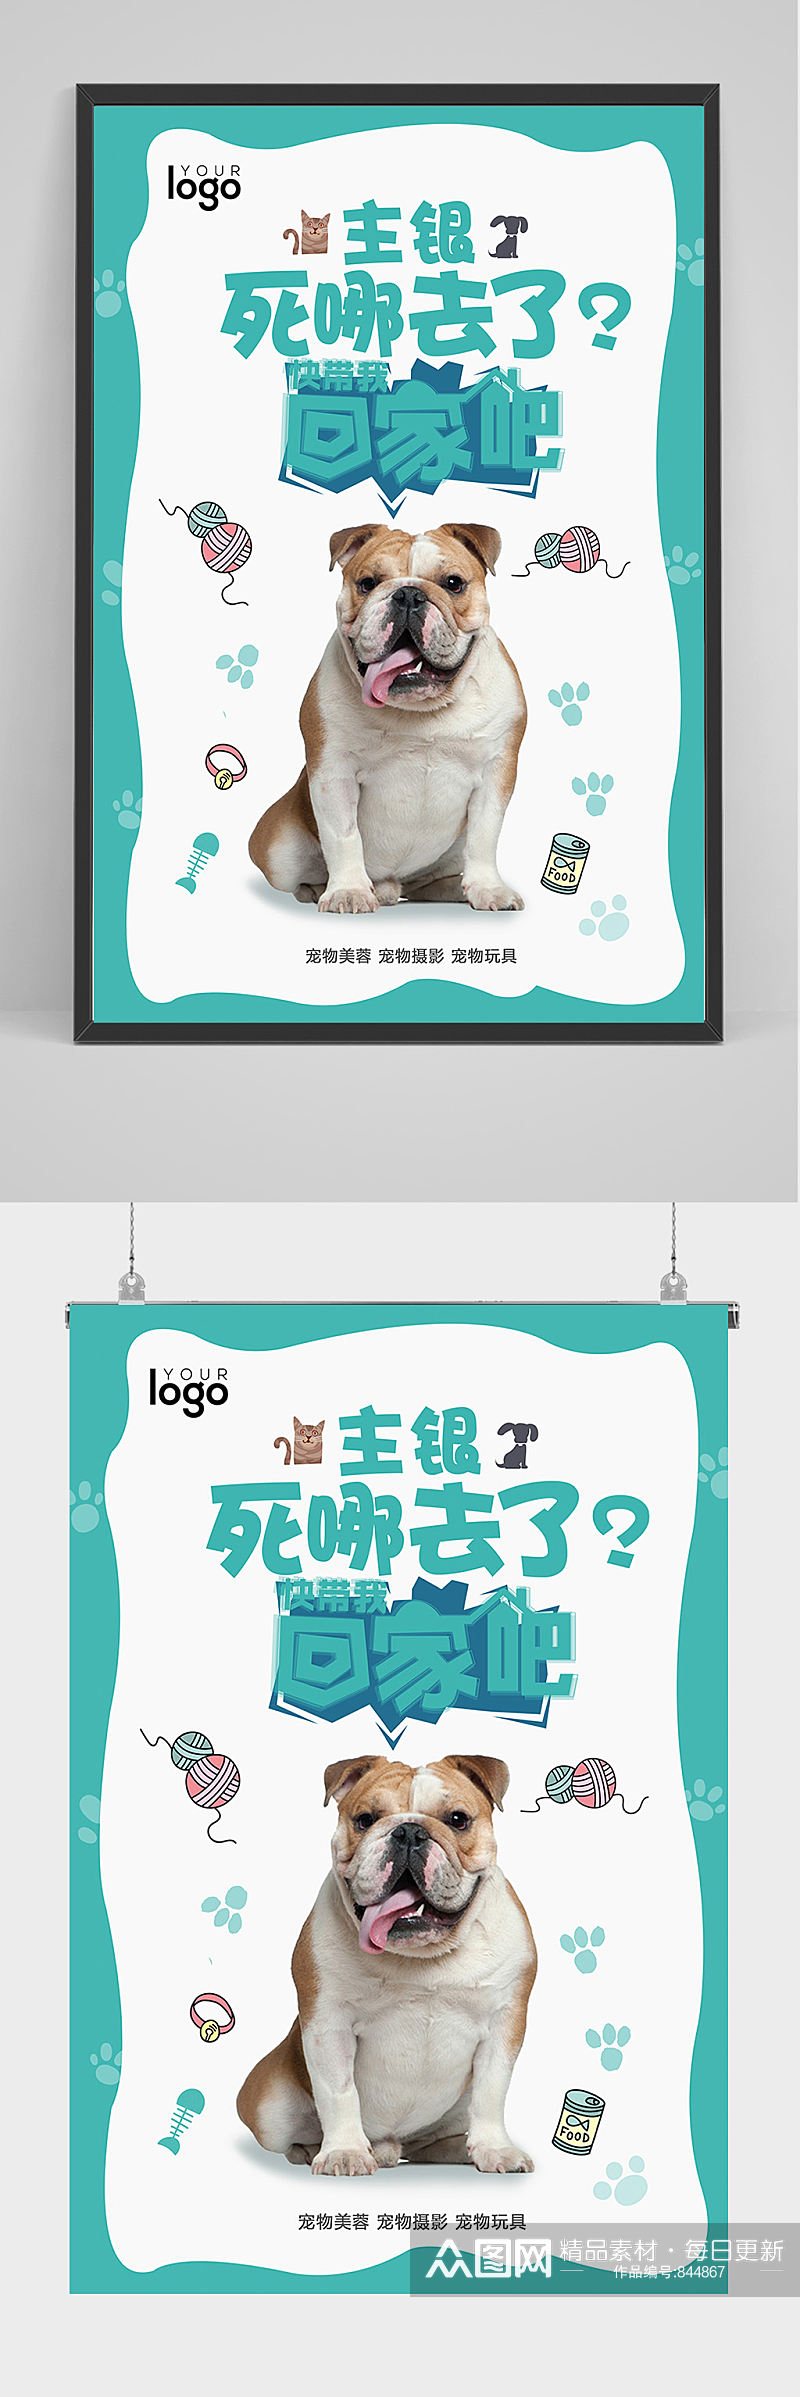 创意宠物狗海报设计素材